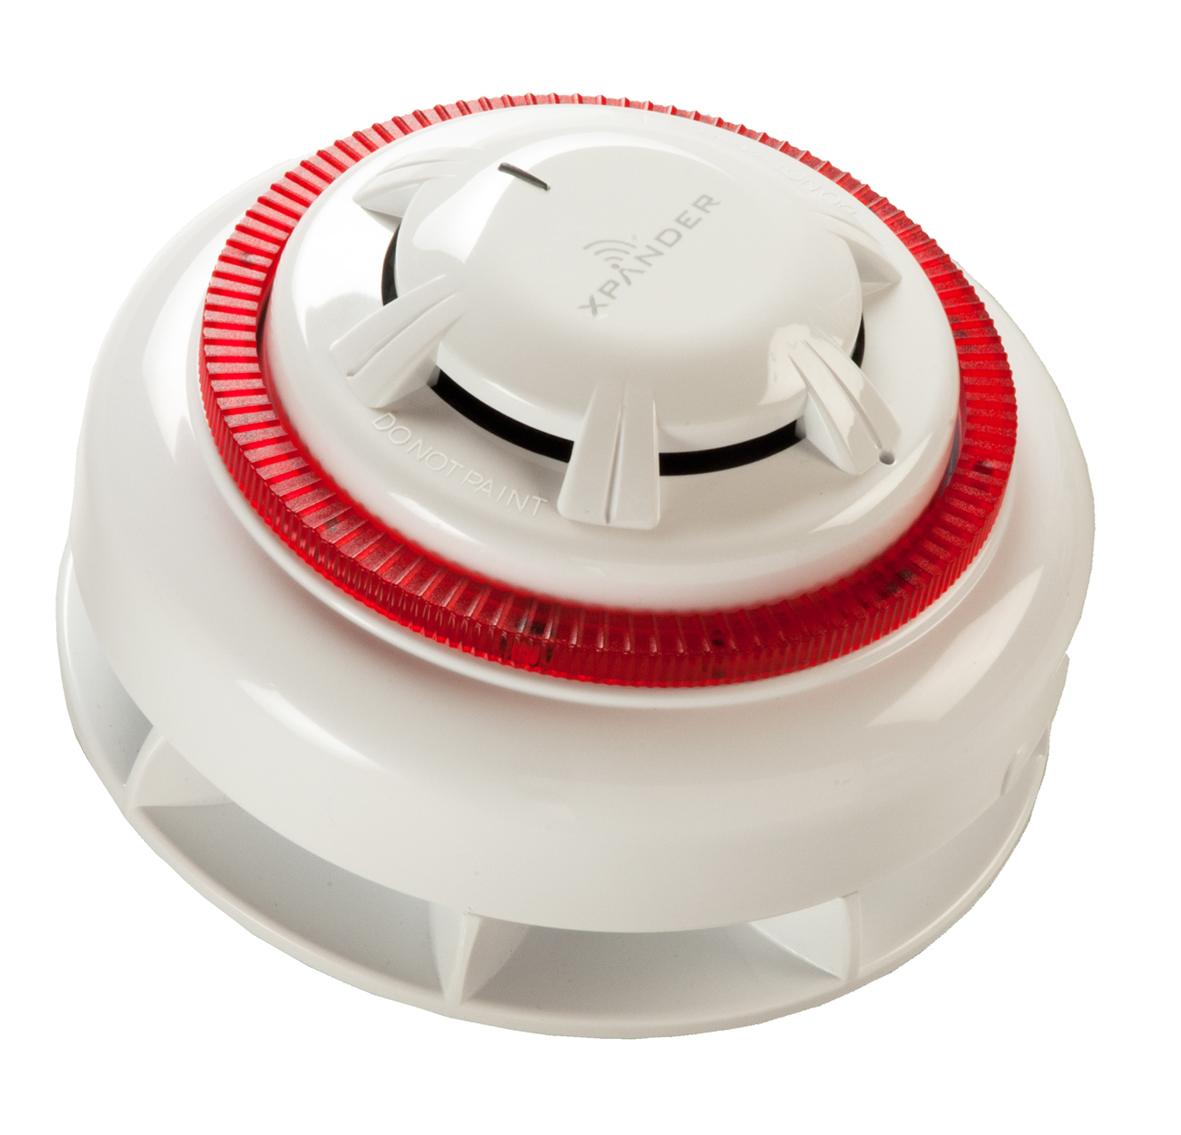 download smoke detector flashing red